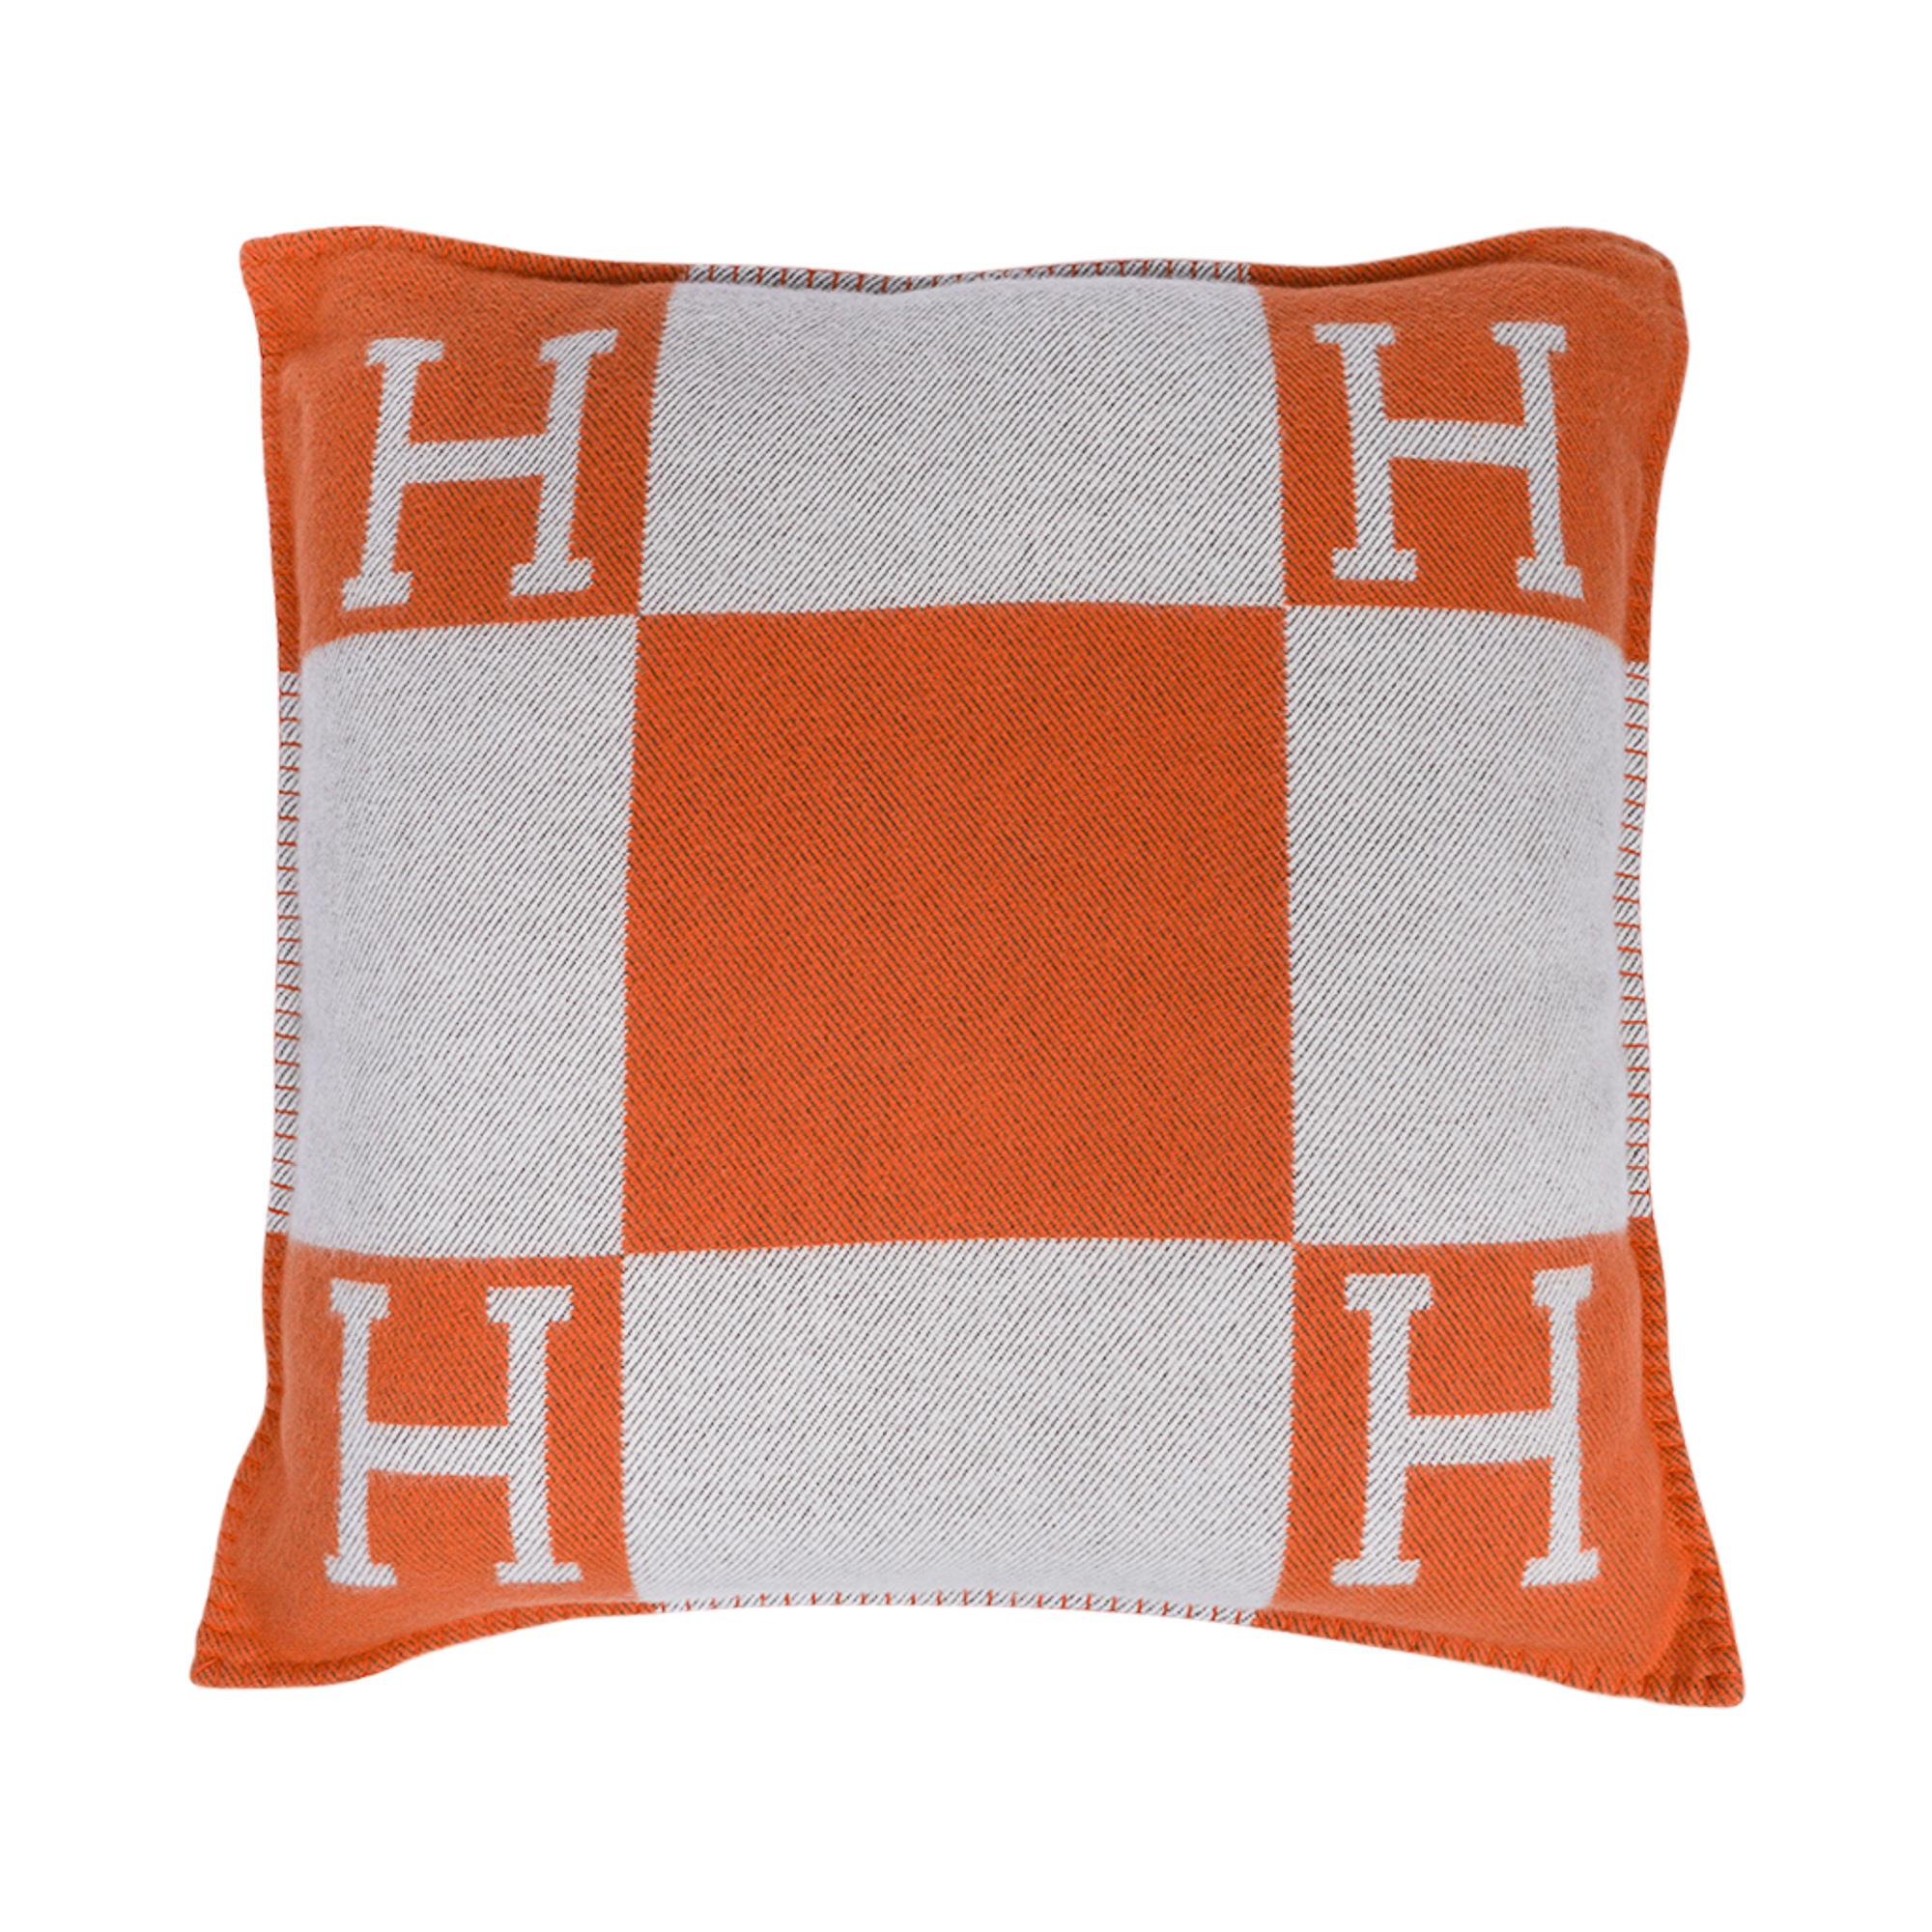 Hermes Pillow Avalon Orange / Ecru Large Model New For Sale 1